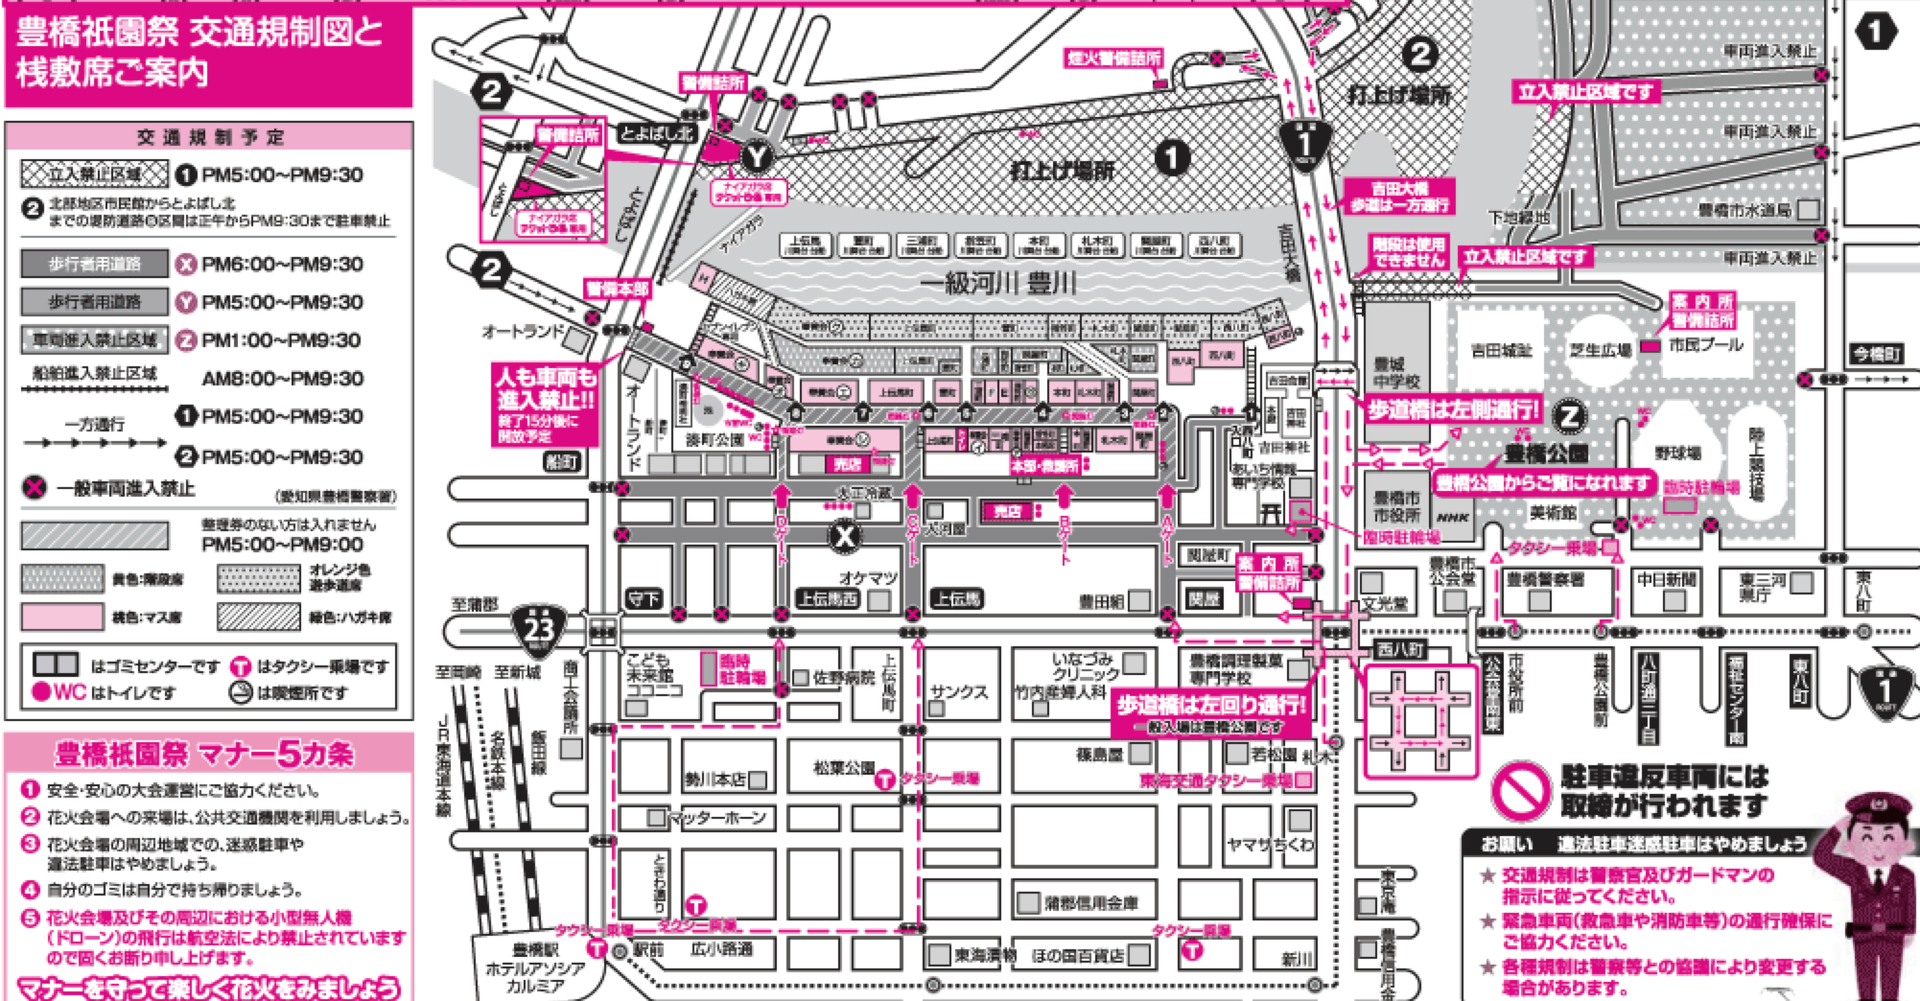 豊橋祇園祭 16 交通規制 駐車場 屋台の場所